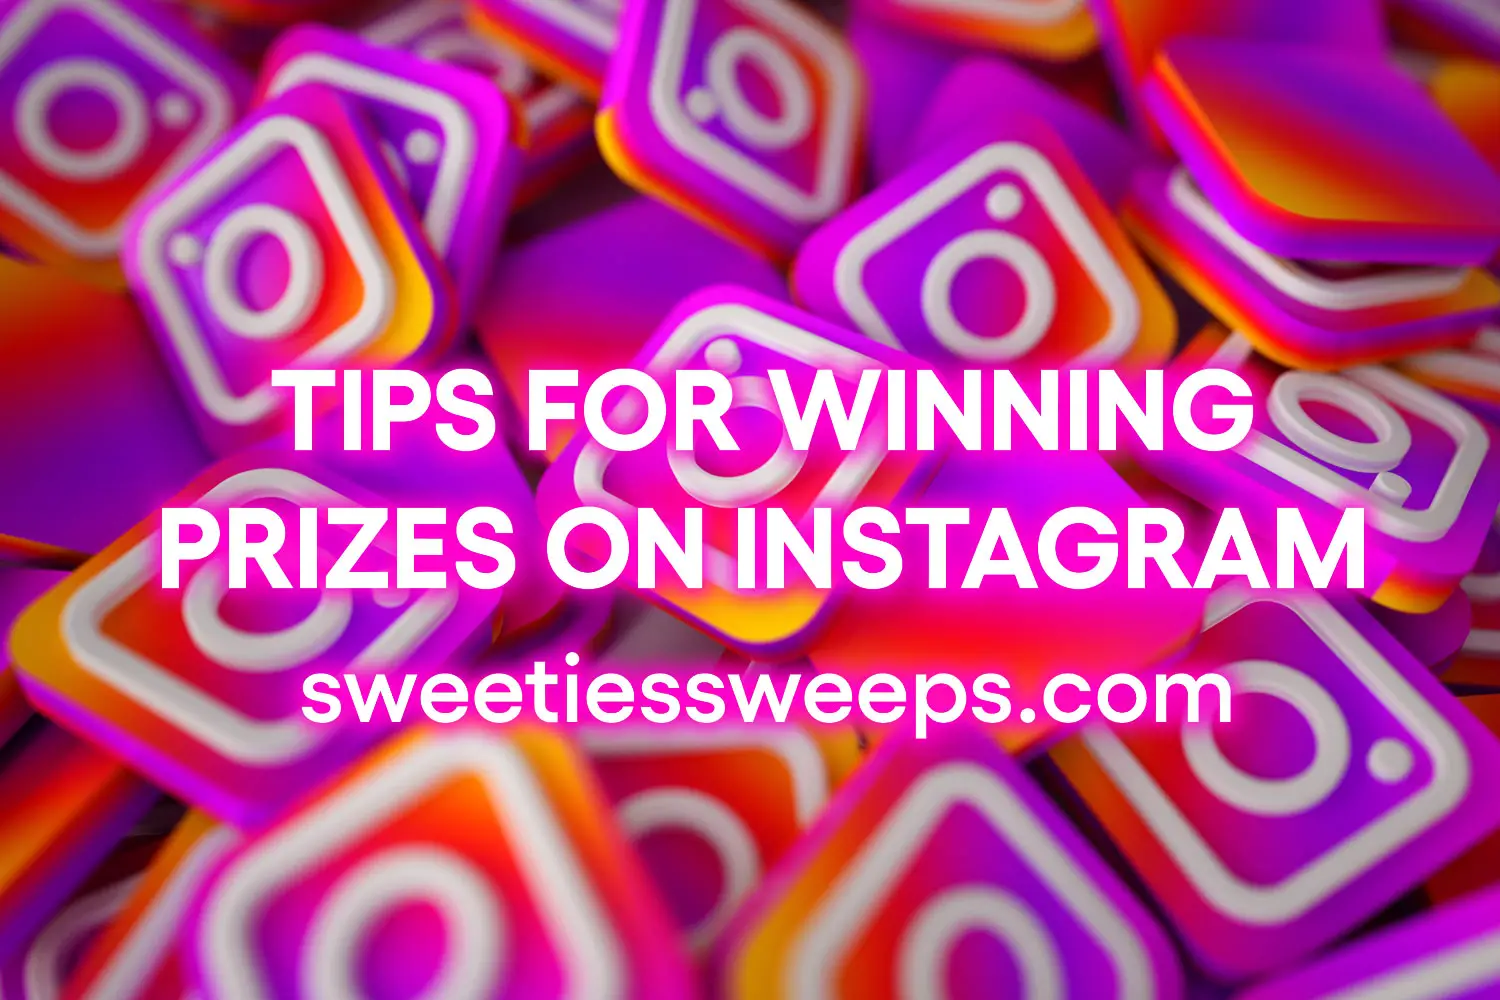 10 Tips for Winning Prizes on Instagram